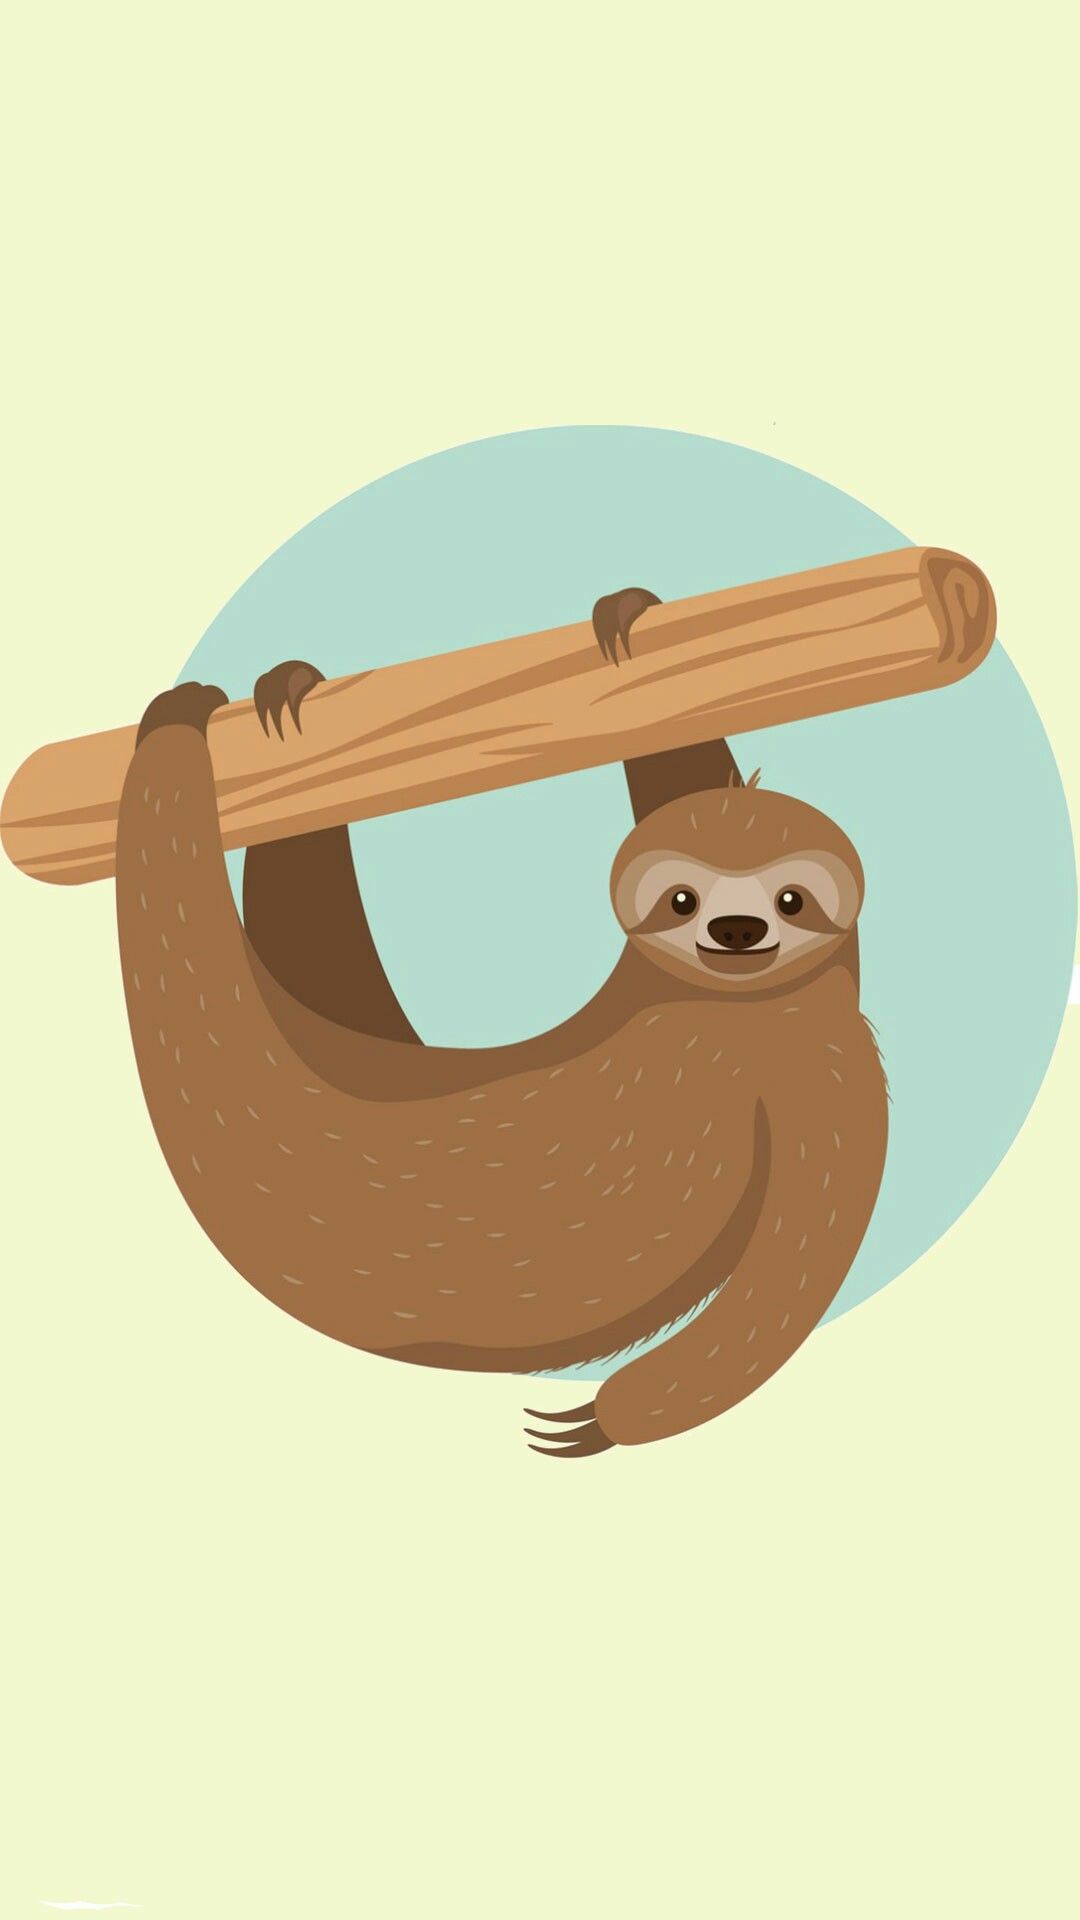 Sloth wallpaper. Sloth art, Sloth drawing, Sloth